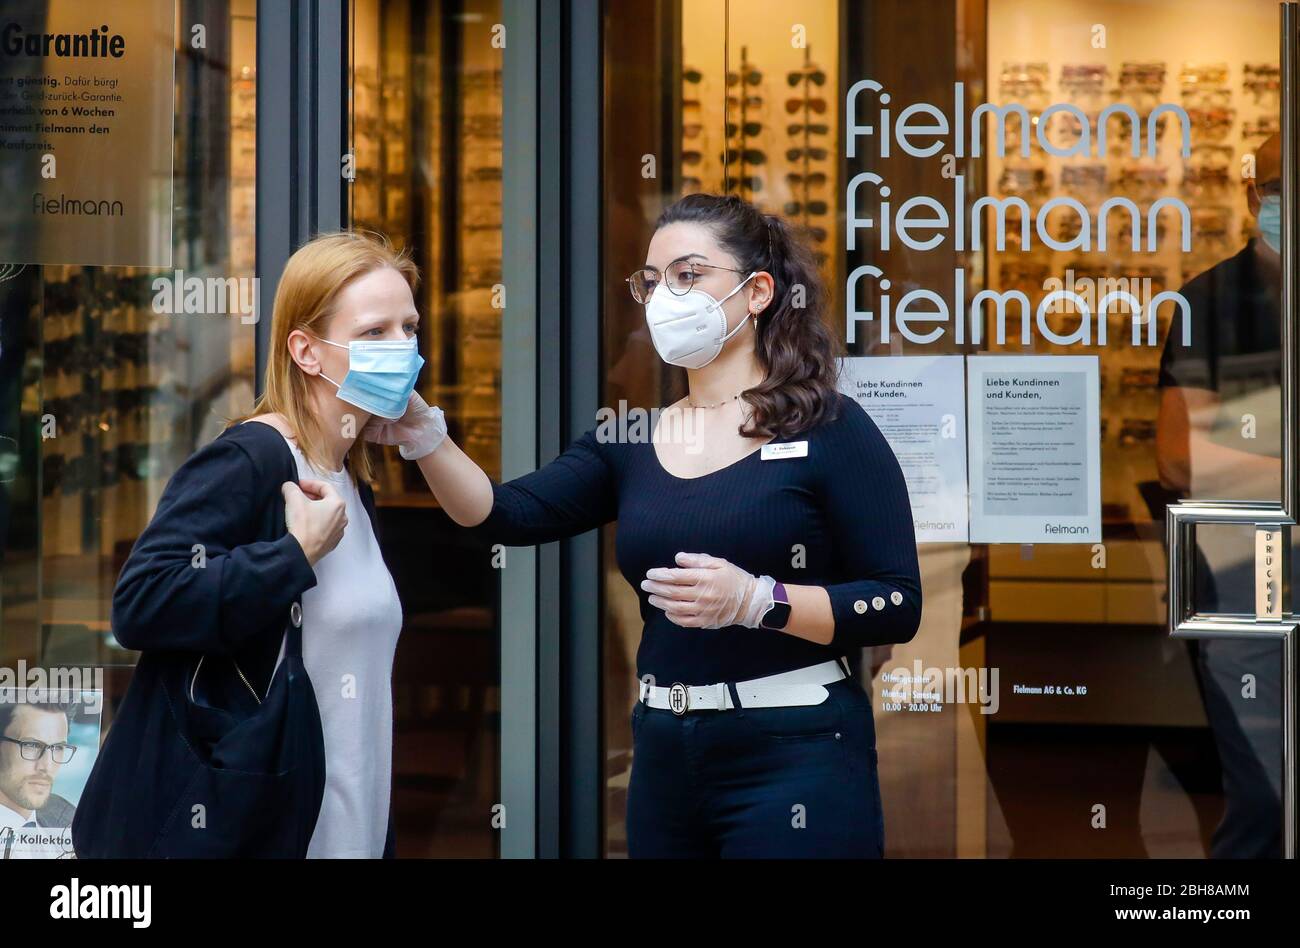 24.04.2020, Essen, Renania del Norte-Westfalia, Alemania - a partir del lunes 27 de abril, la obligación de usar una máscara se aplicará en NRW cuando se vaya de compras y en autobuses Foto de stock